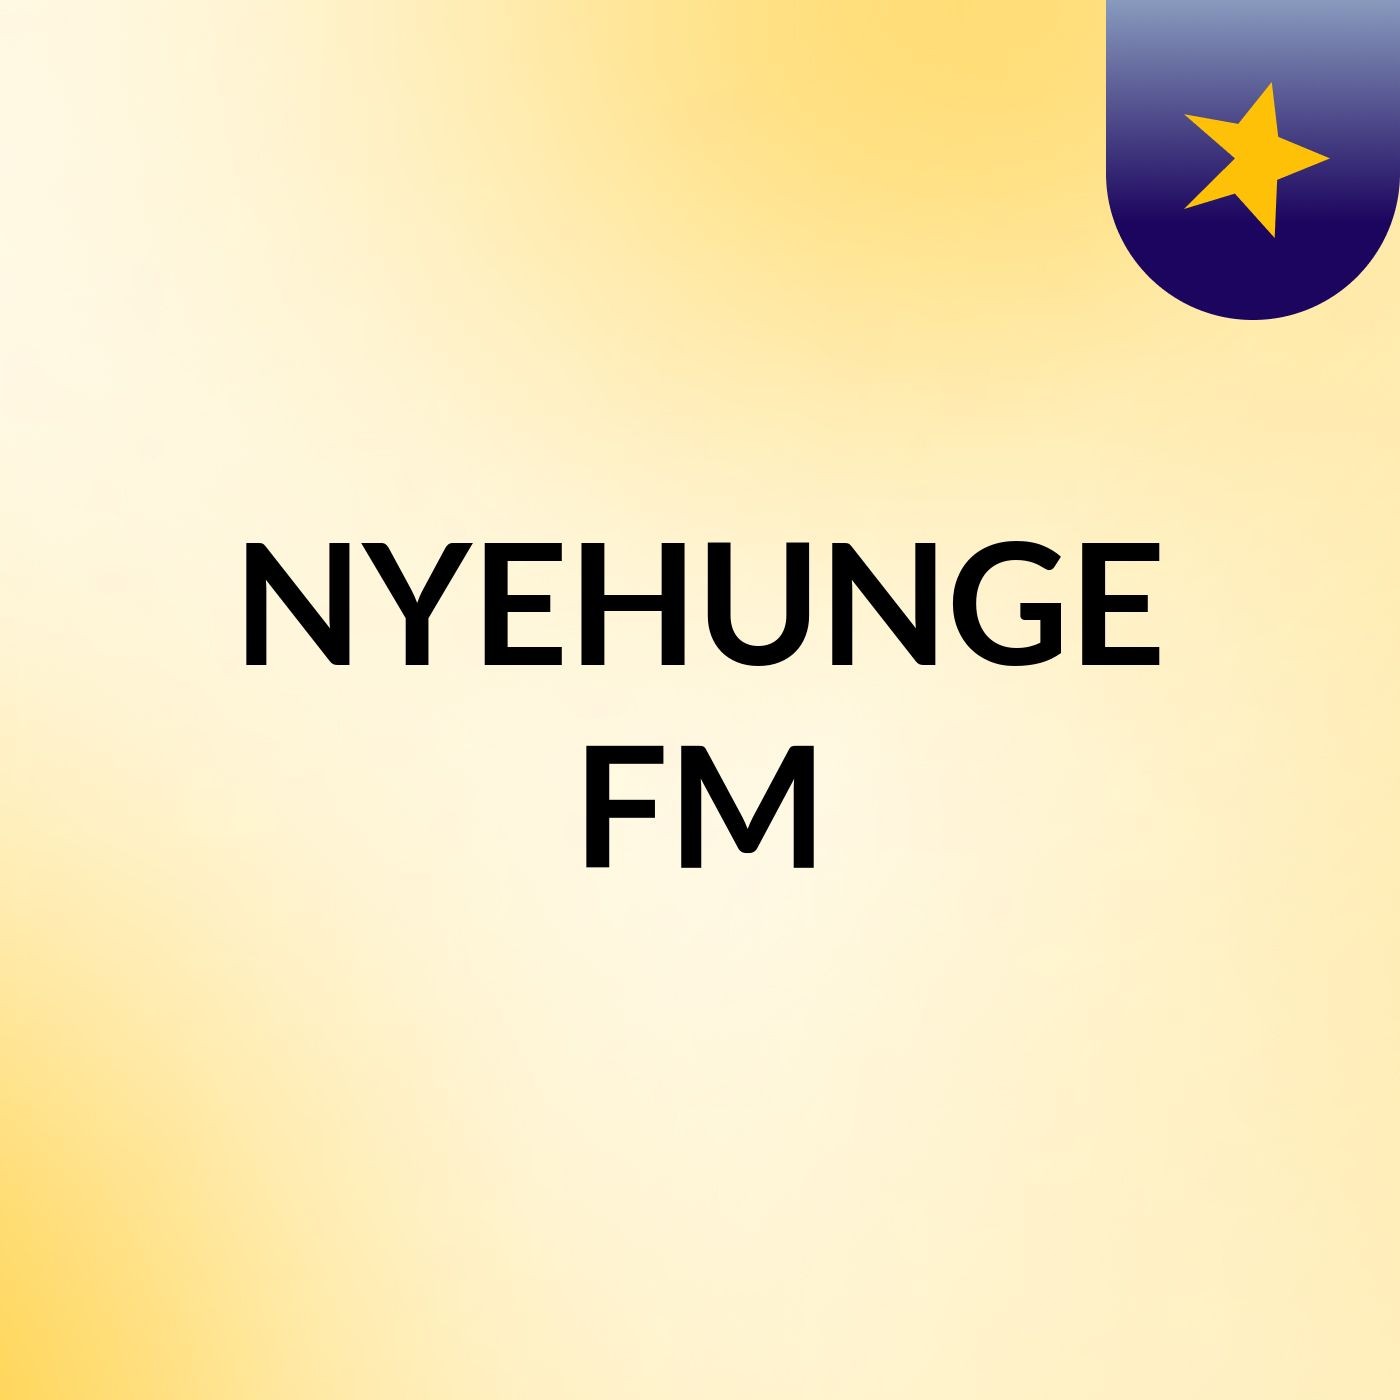 NYEHUNGE FM